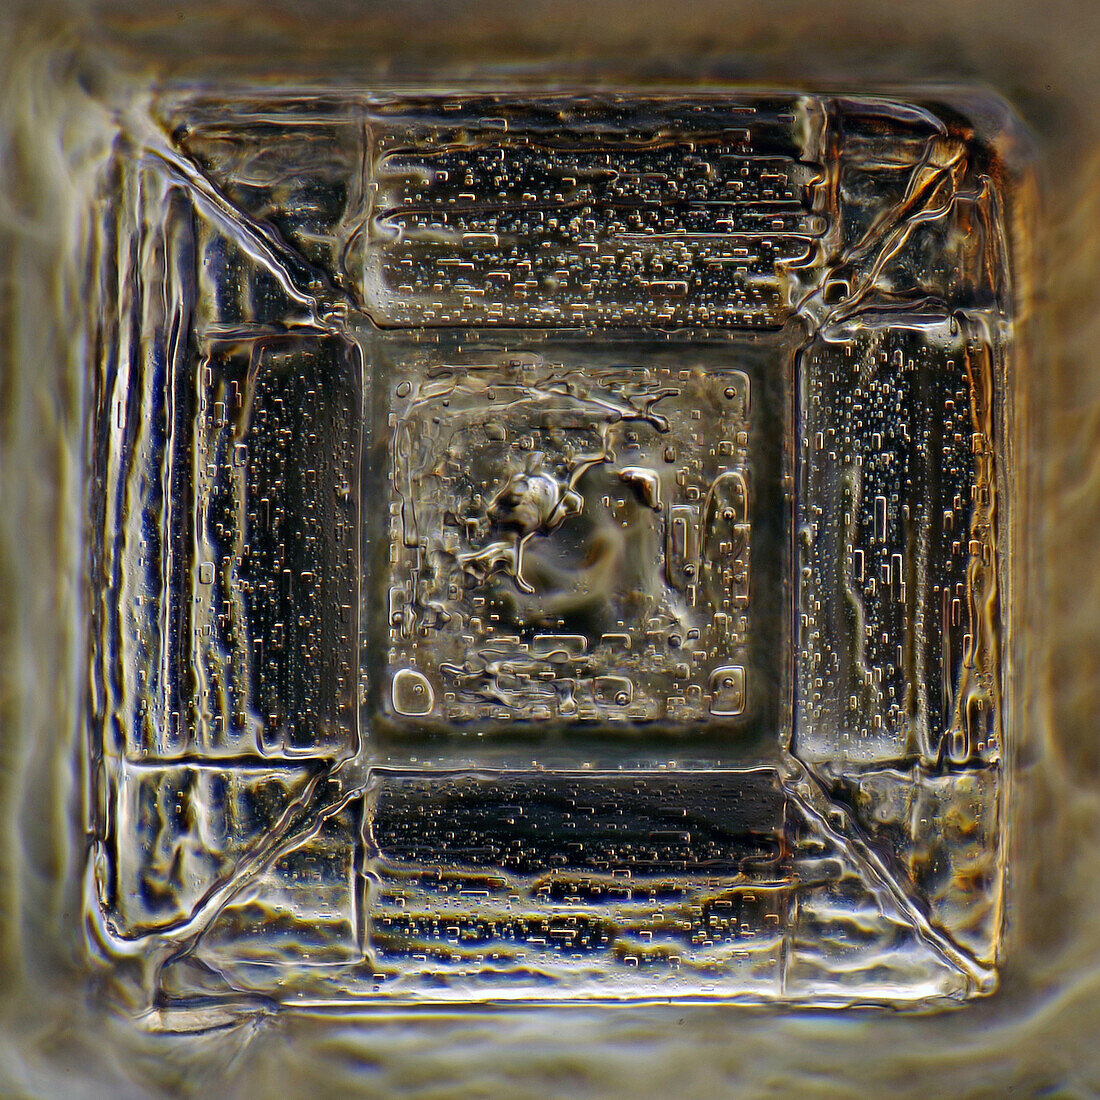 Das Bild zeigt einen Einkristall von rekristallisiertem Salz, fotografiert durch das Mikroskop in polarisiertem Licht bei einer Vergrößerung von 100X